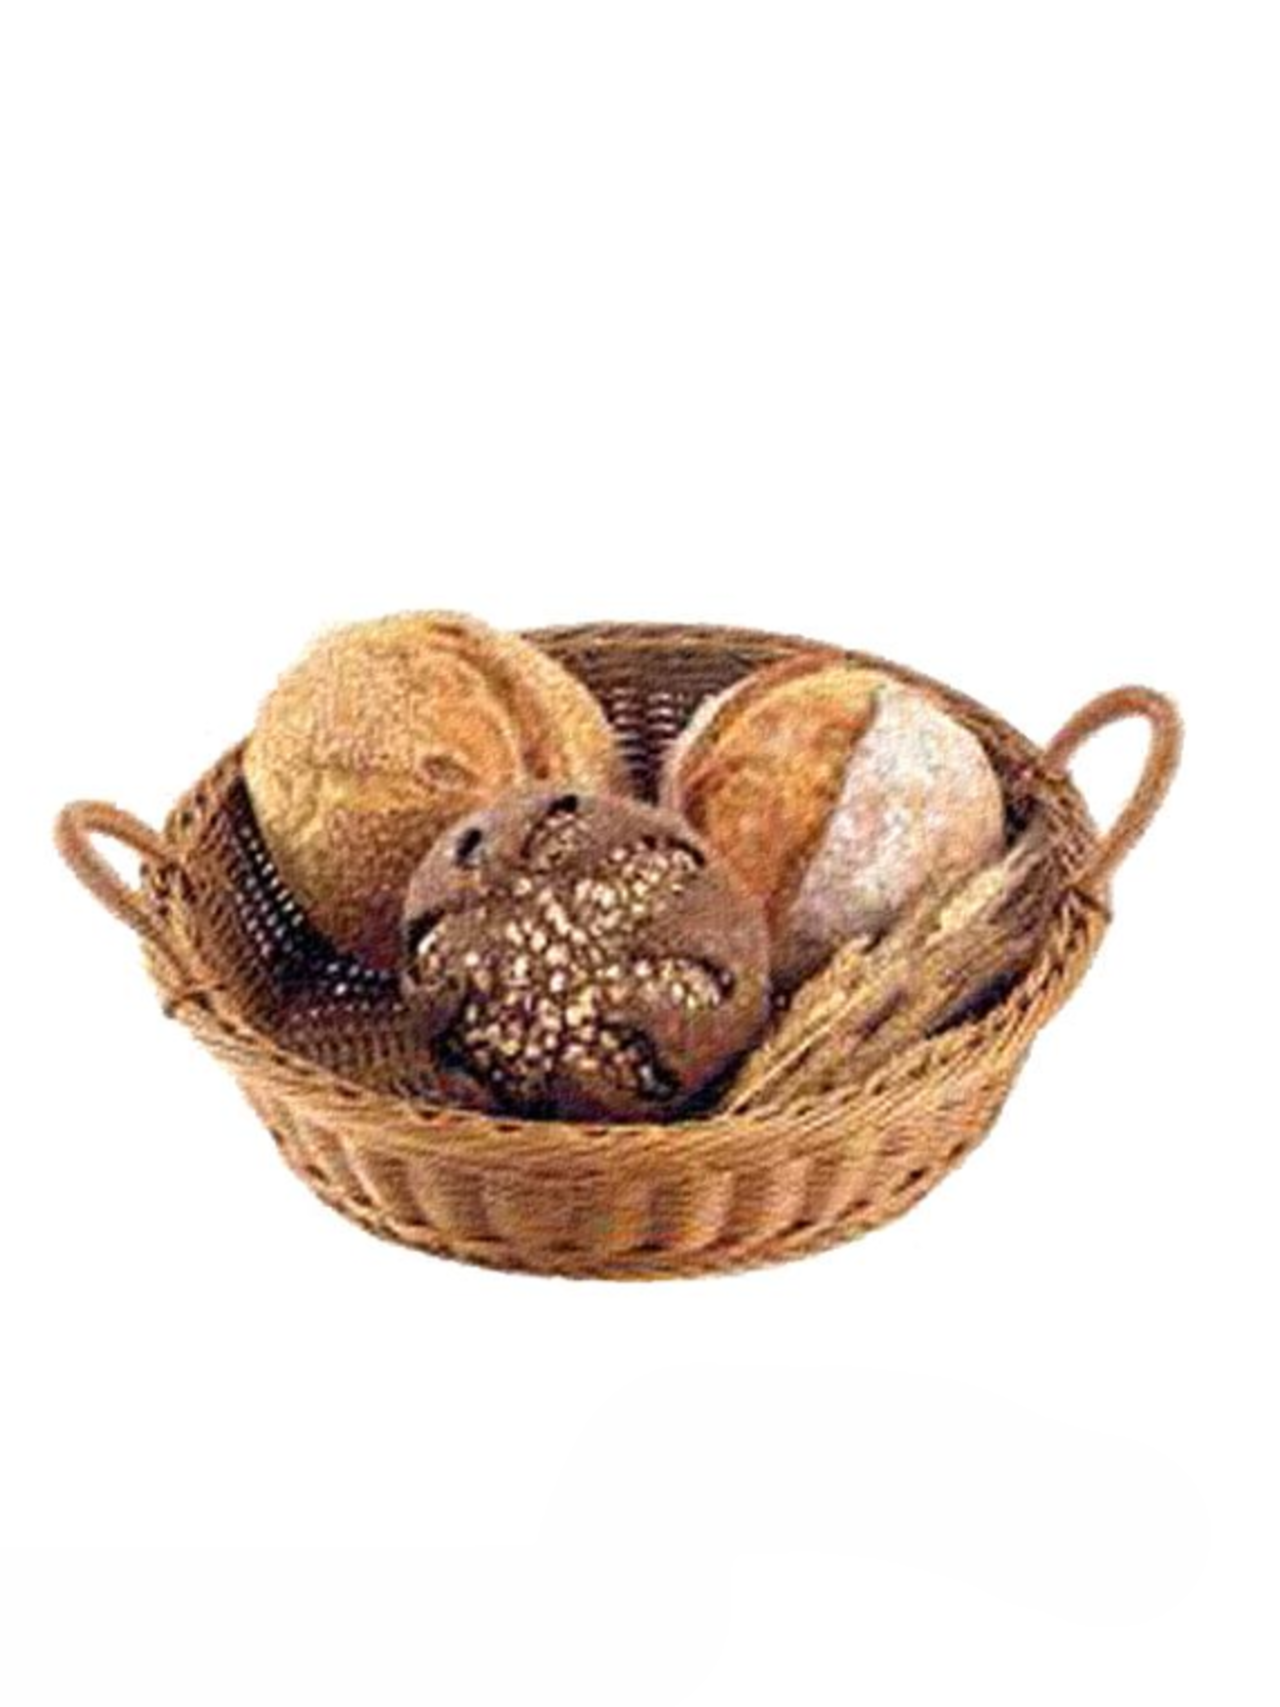 Πανέρια / Καλάθια Ψωμιού